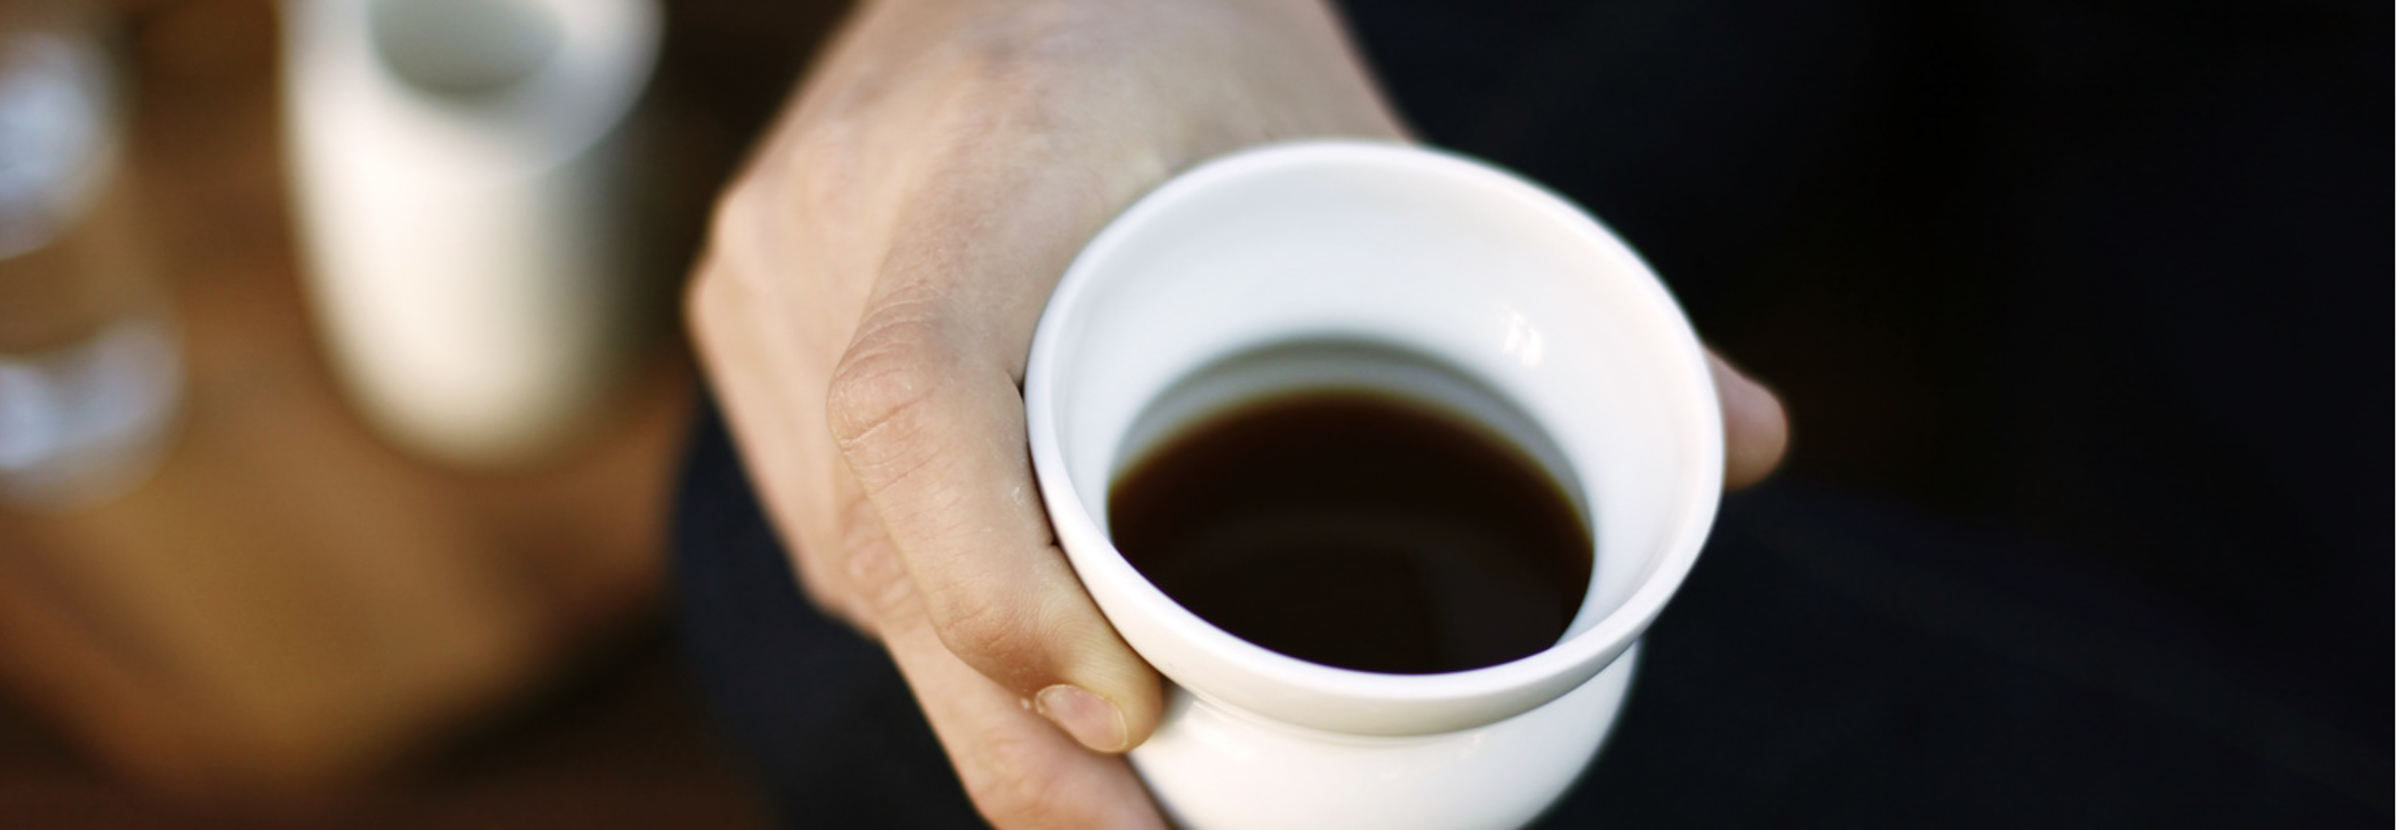 Mão segurando uma xícara de café -- torrefações nórdicas